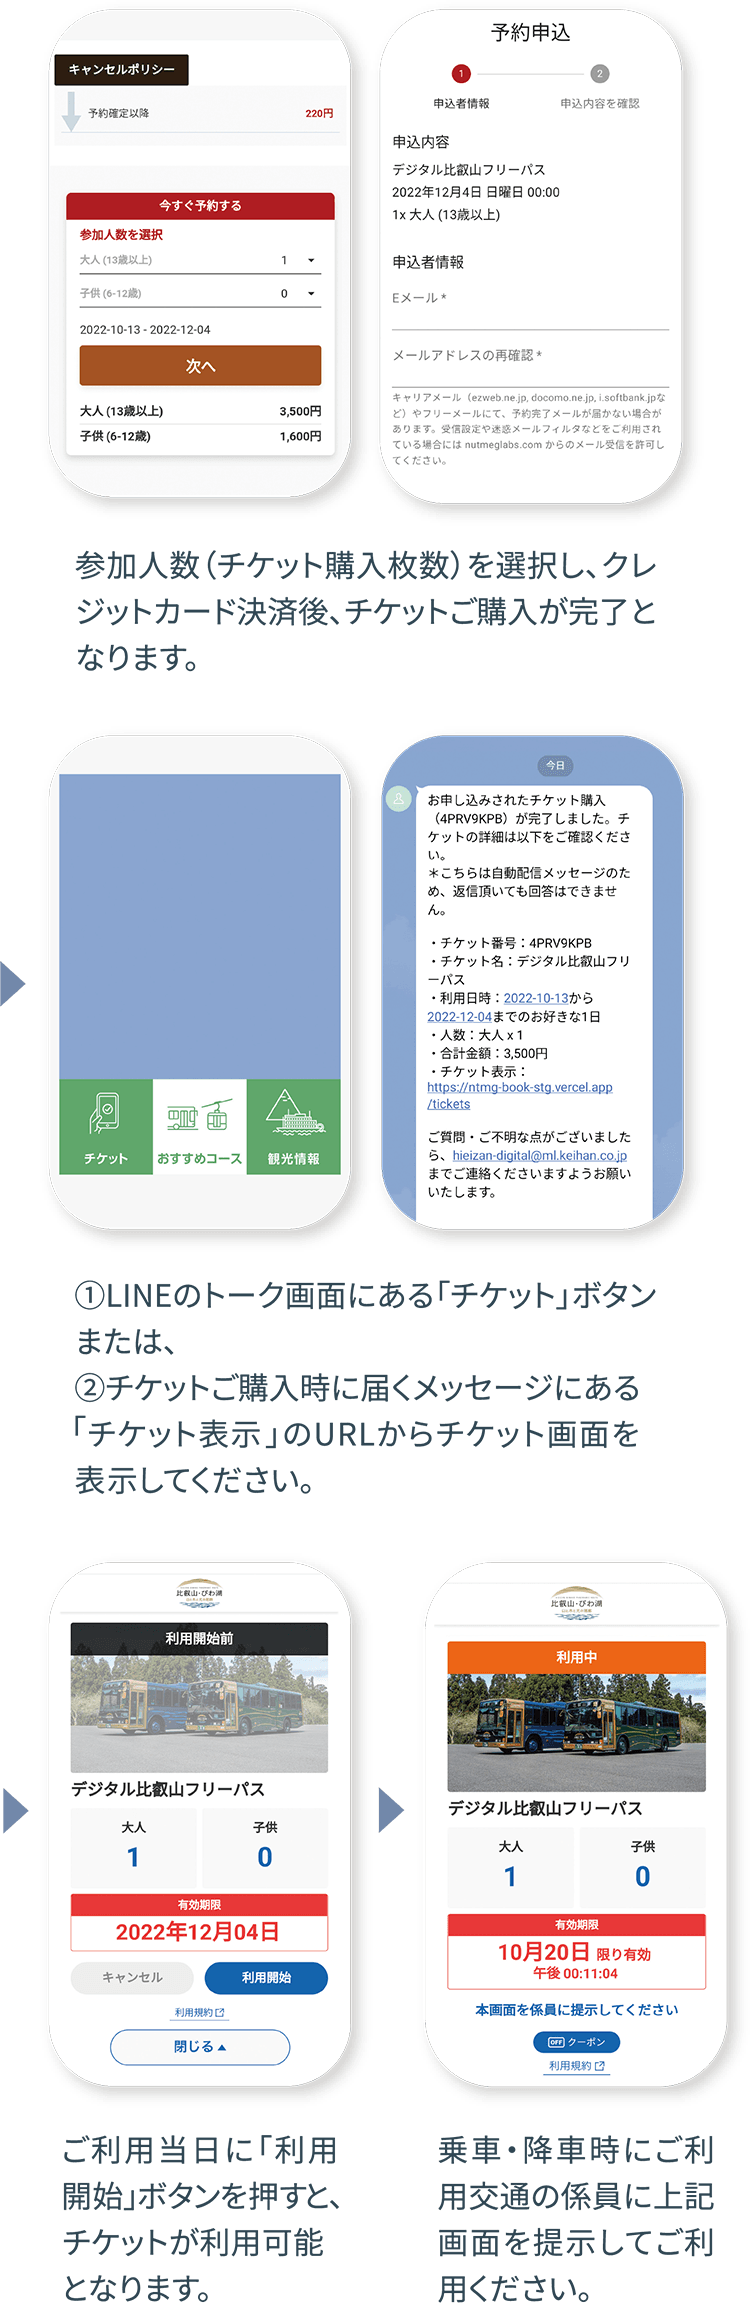 デジタル比叡山フリーパスの申込方法